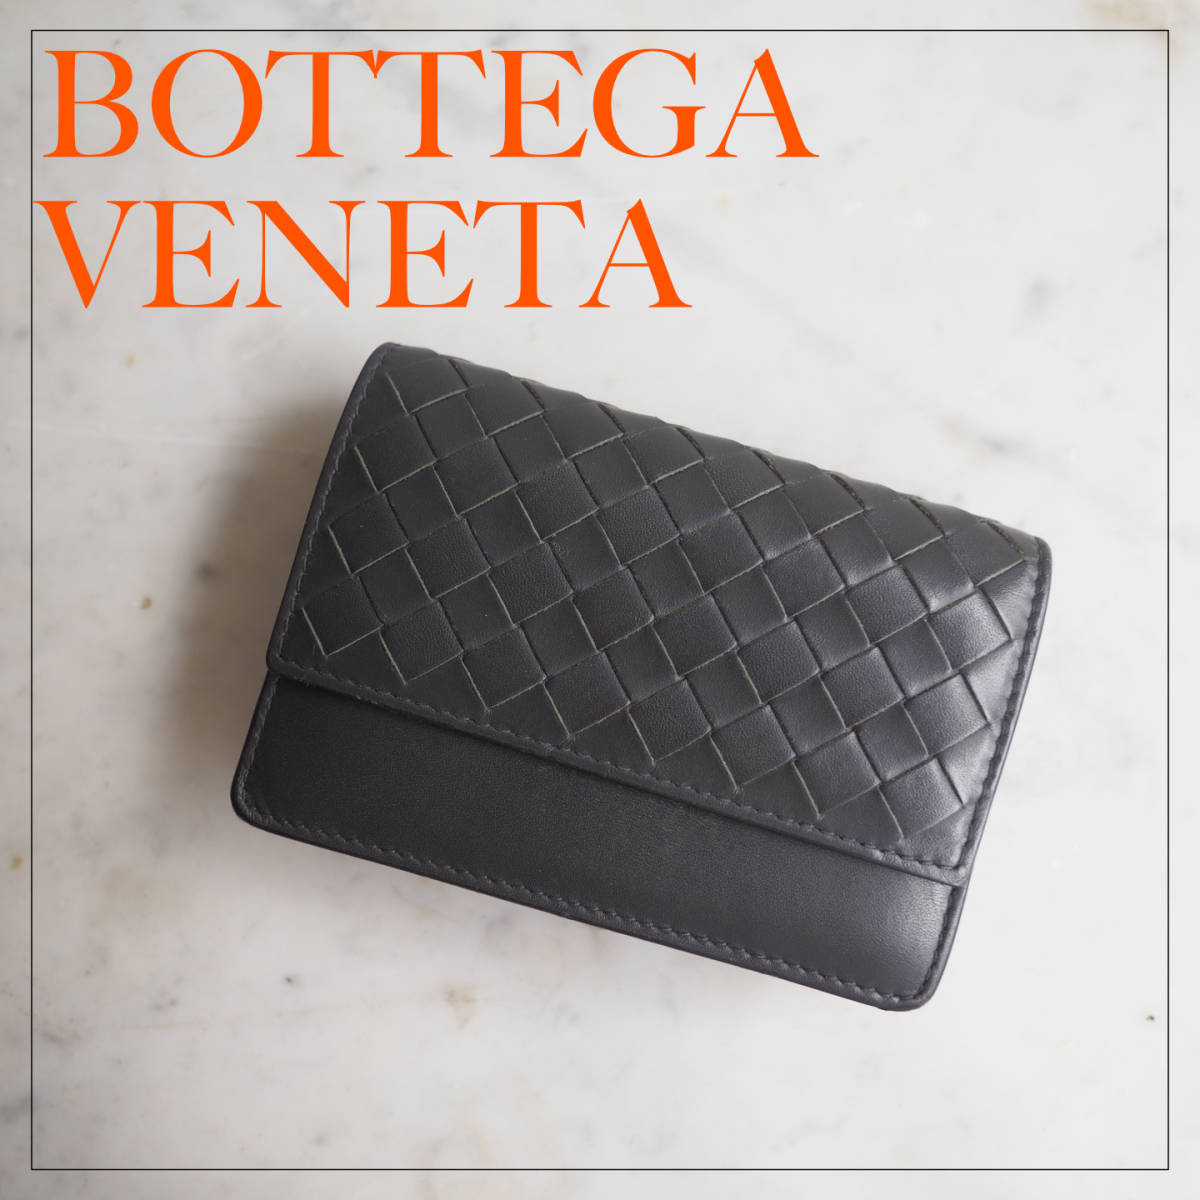 ボッテガヴェネタ BOTTEGA VENETA イントレチャート カードケース 名刺